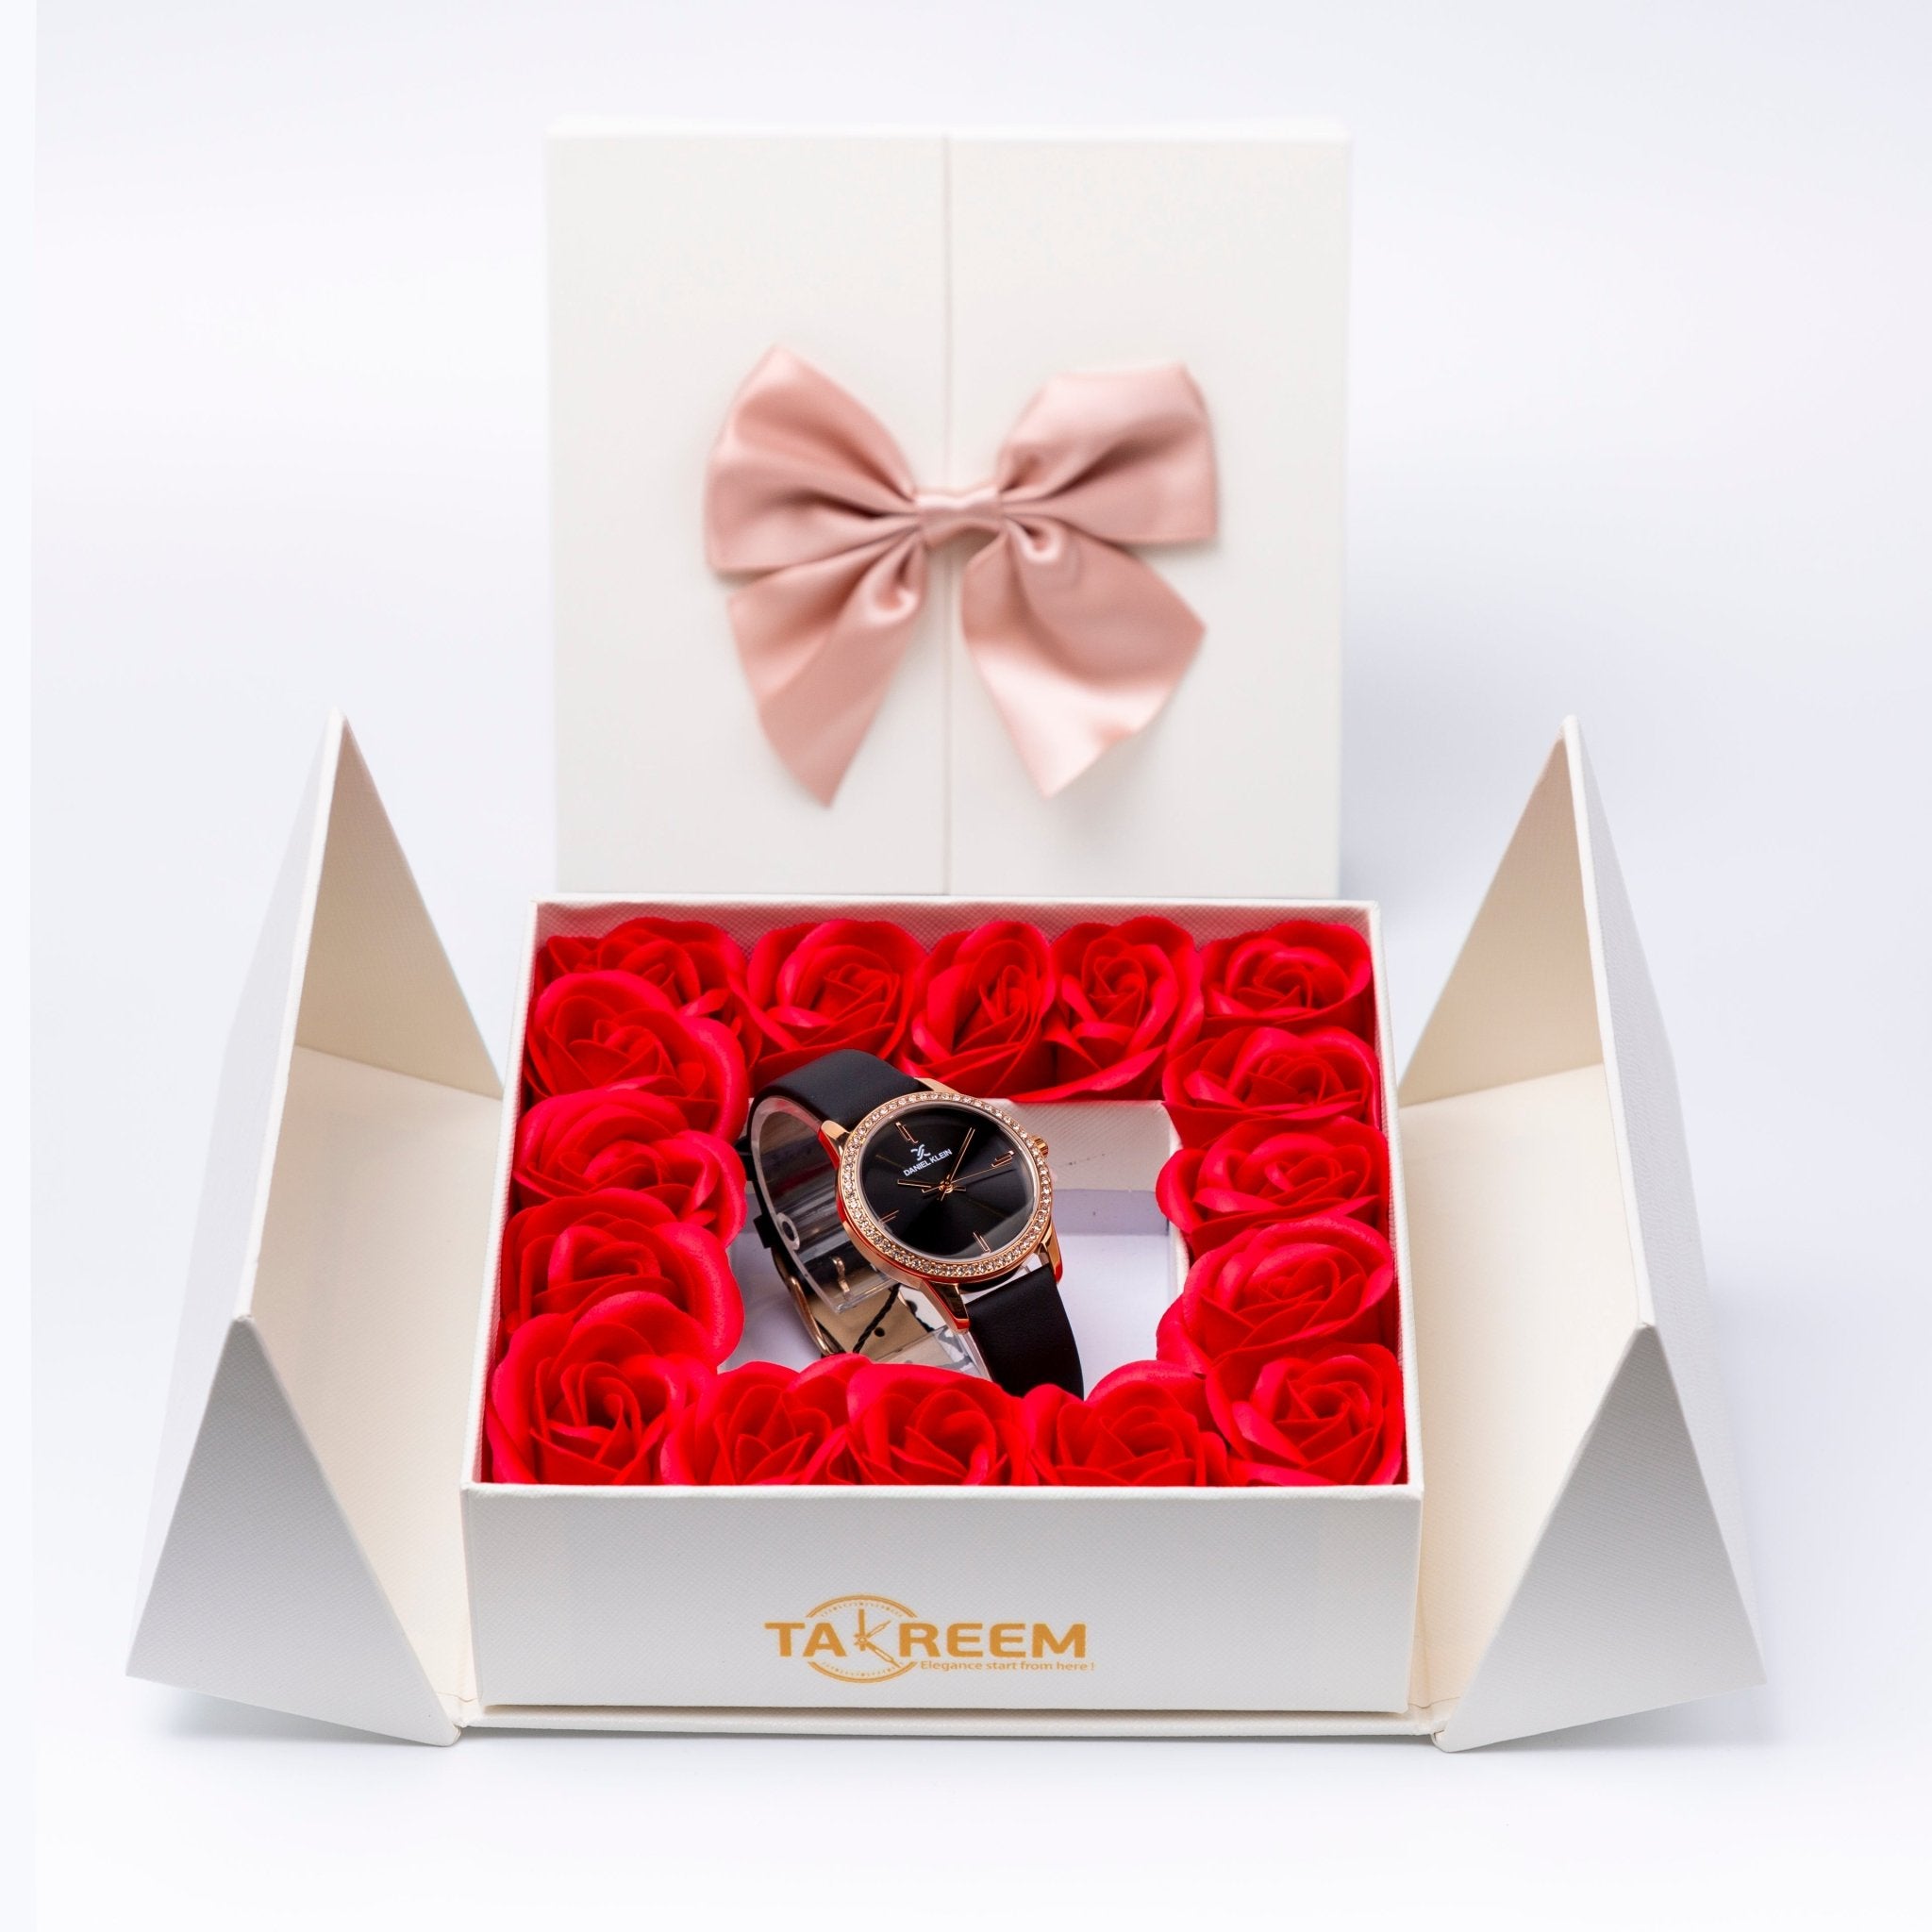 Flower Box - Gift For Women 5 - #shoFlower Box - Gift For Women 5p_name#Flower Box - Gift For Women 5Gift Boxes & TinsTakreemTakreem.joWomenWatchFlower Box - Gift For Women 5 - Takreem.jo